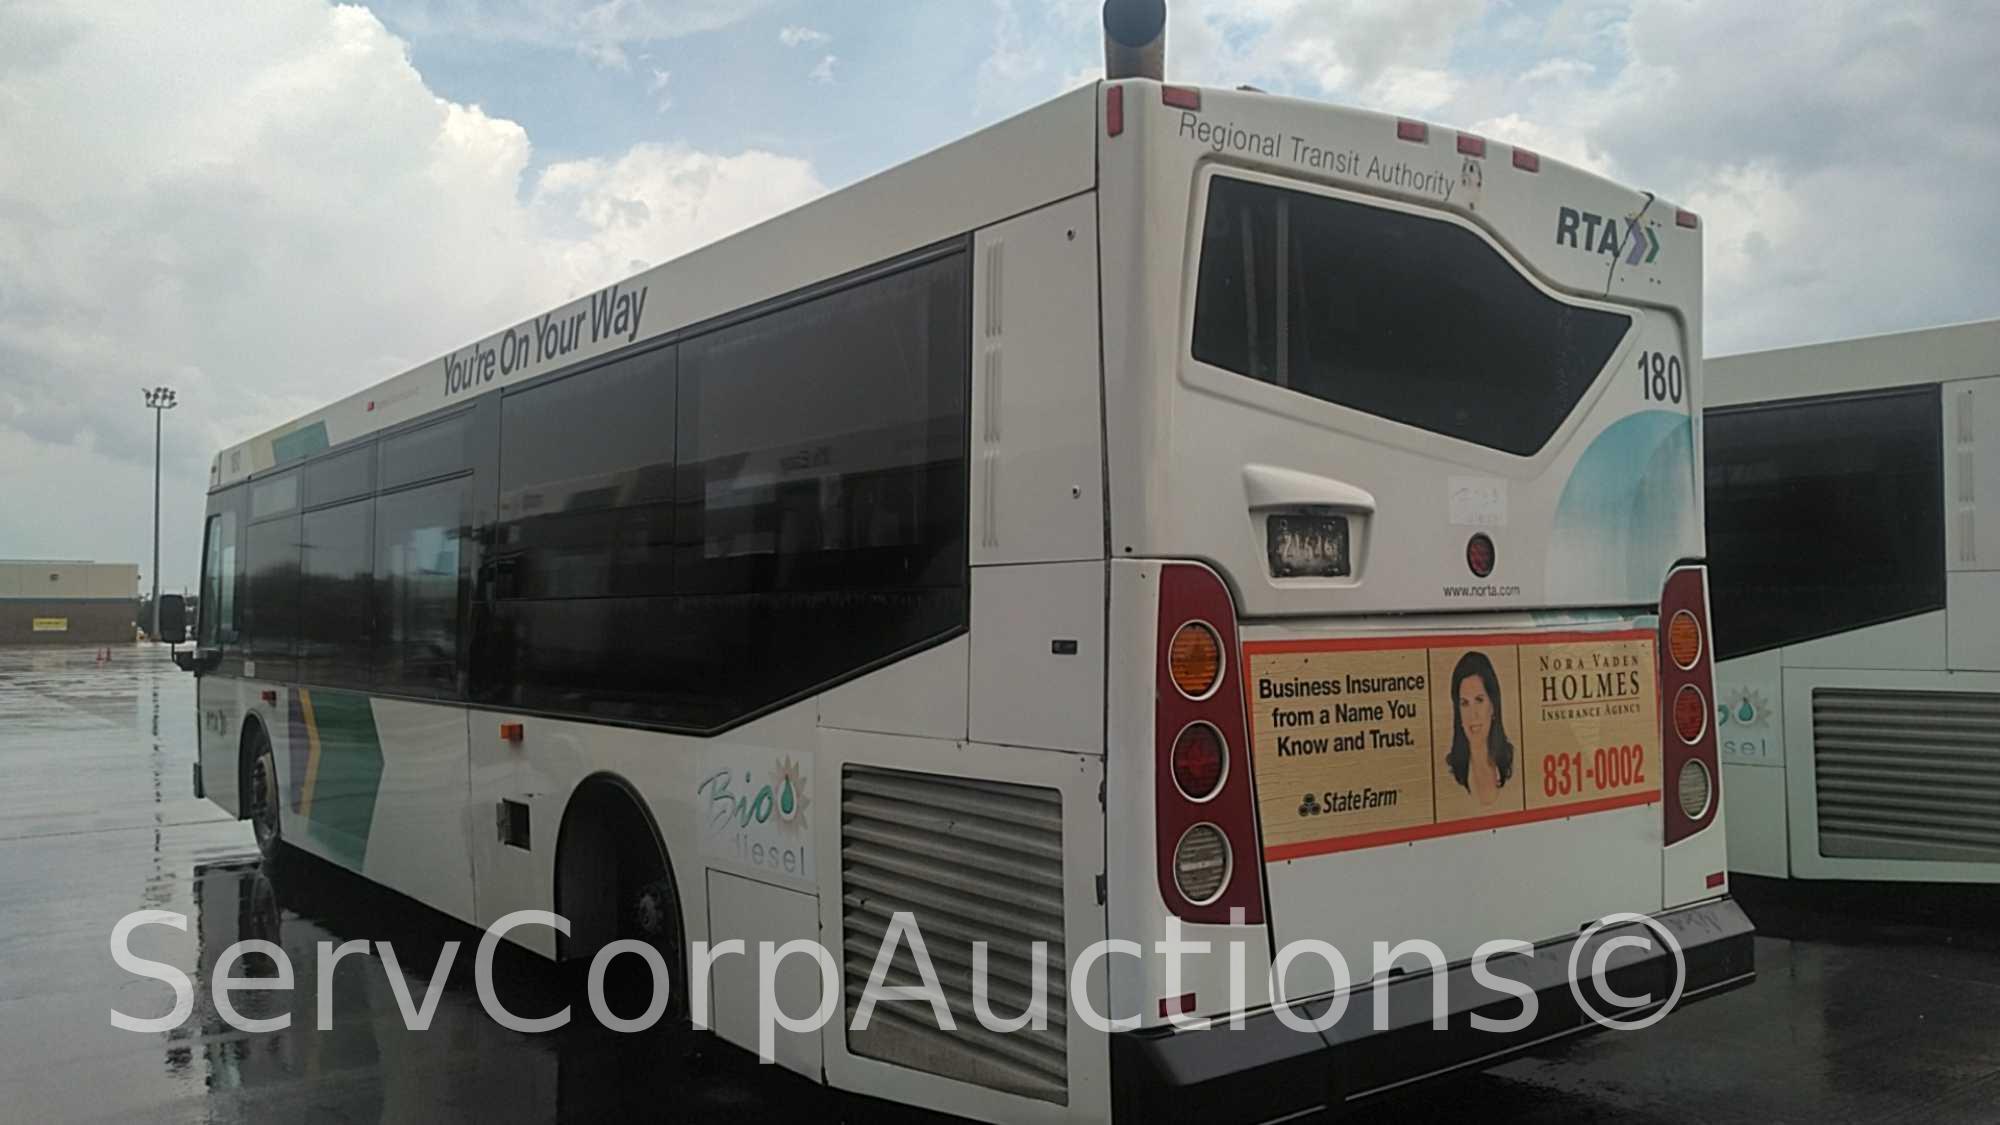 2008 Orion Orion VII Bus, VIN # 1VHFF3G2386704126